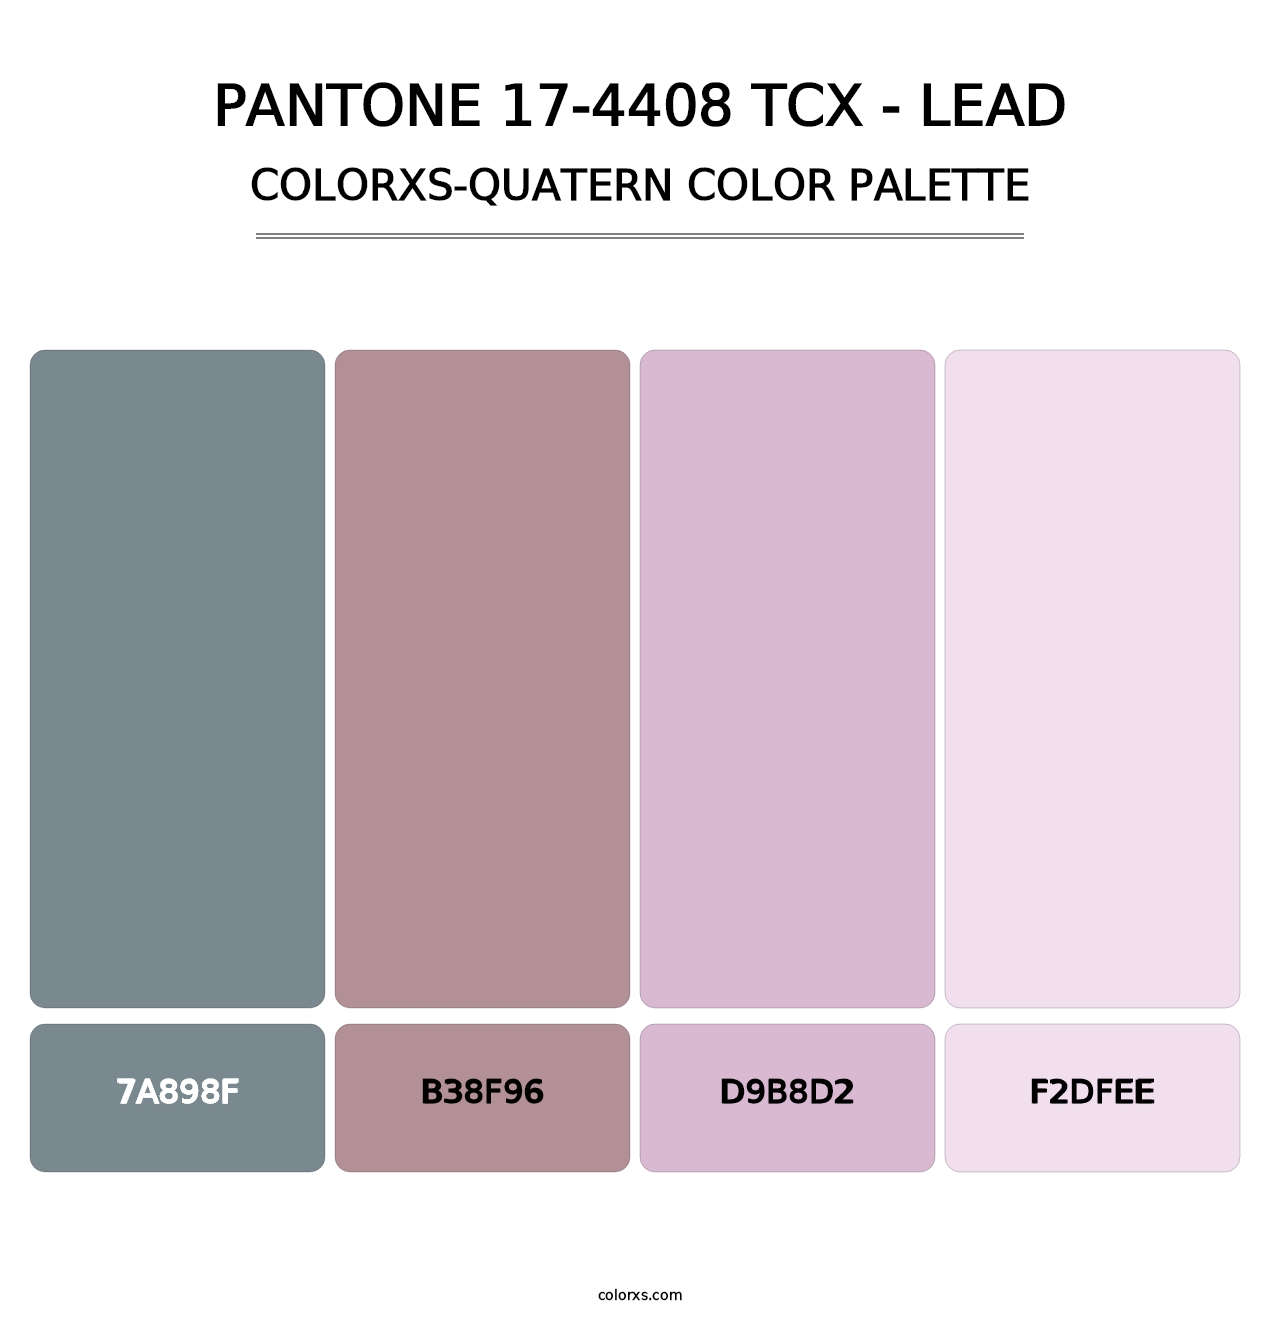 PANTONE 17-4408 TCX - Lead - Colorxs Quatern Palette